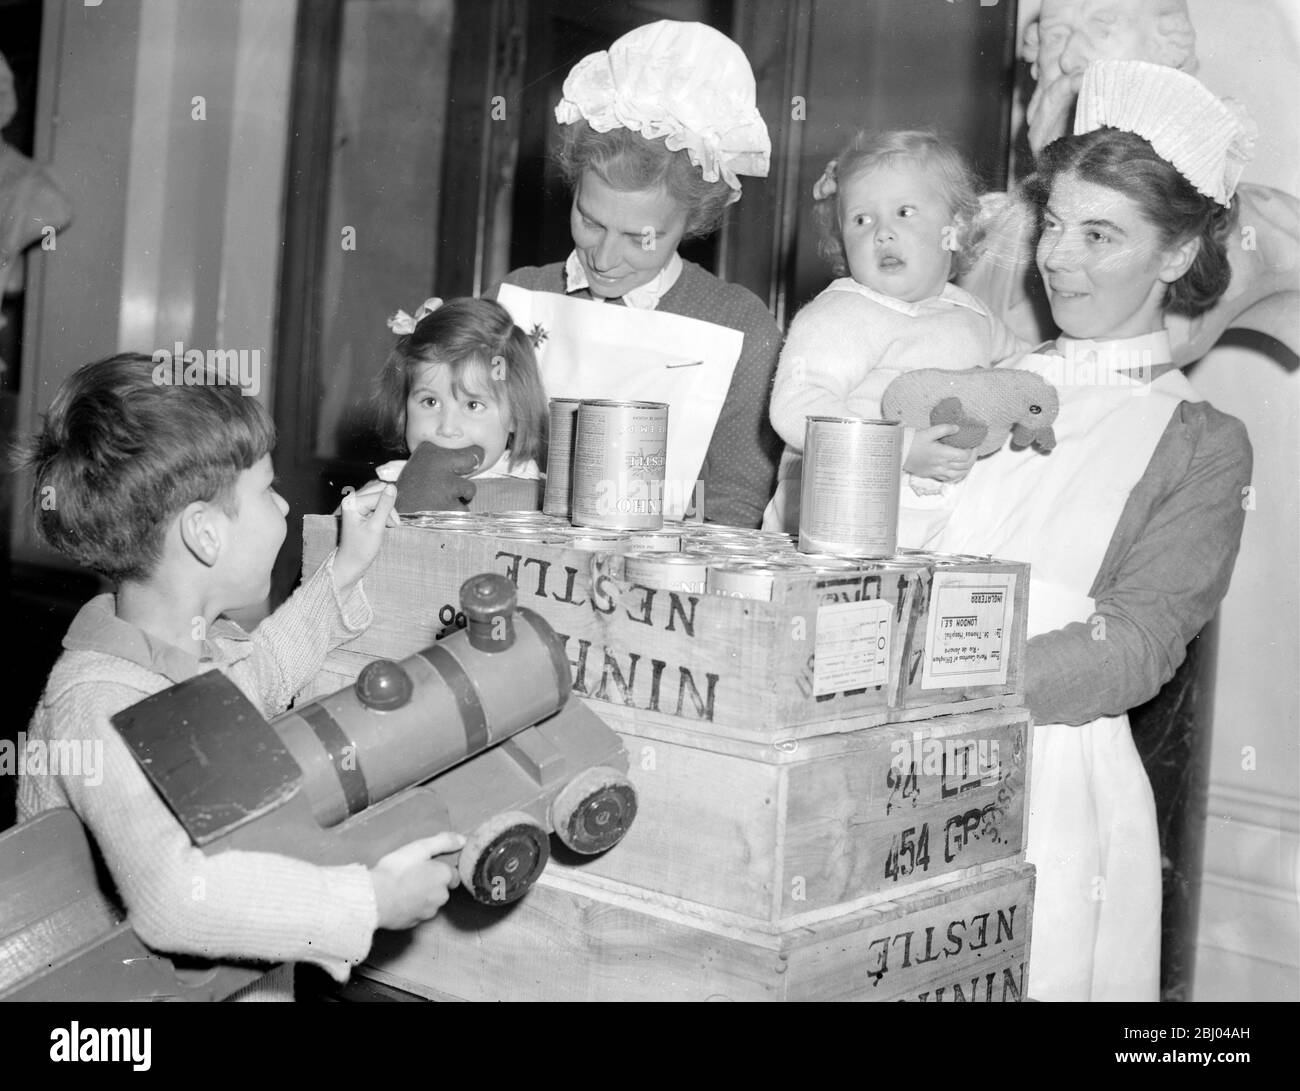 Eine Ladung Lebensmittelpakete für britische Krankenhäuser aus Brasilien werden in das St. Thomas's Hospital geschickt. - Schwester Lillian und Schwester Seymour mit einigen Kindern des St. Thomas's Hospital, die heute einige der Lebensmittelpakete erhalten. - 13 September 1948 - - - - - - - - - - - - - - - - - - - - - - - - - - - - - - - - - Stockfoto